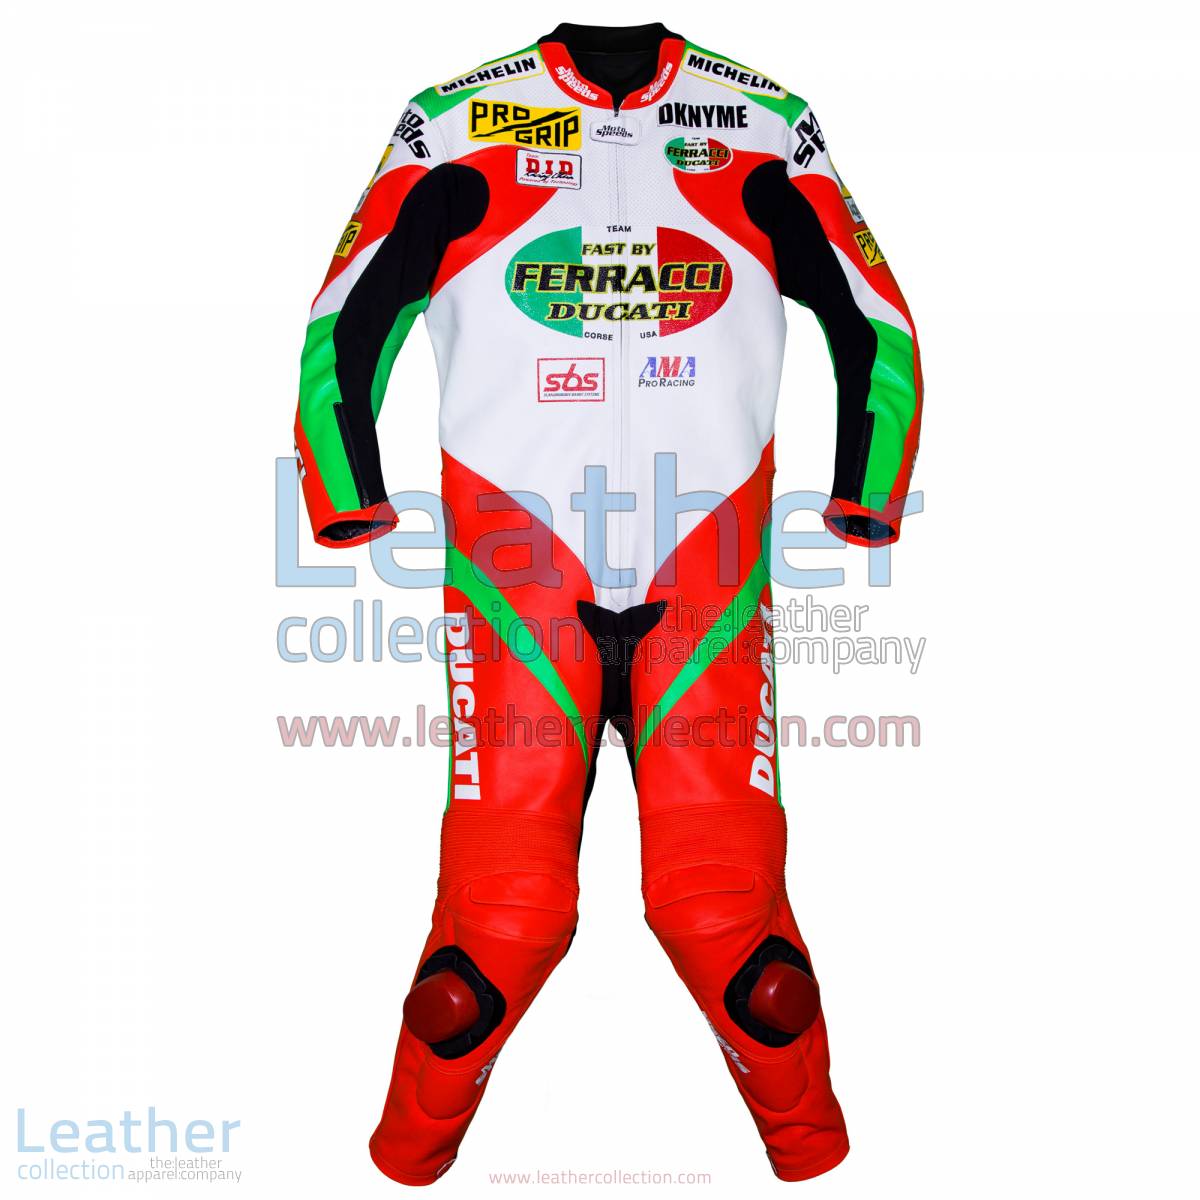 Mat Mladin Ducati AMA Race Suit | ducati apparel,ducati race suit